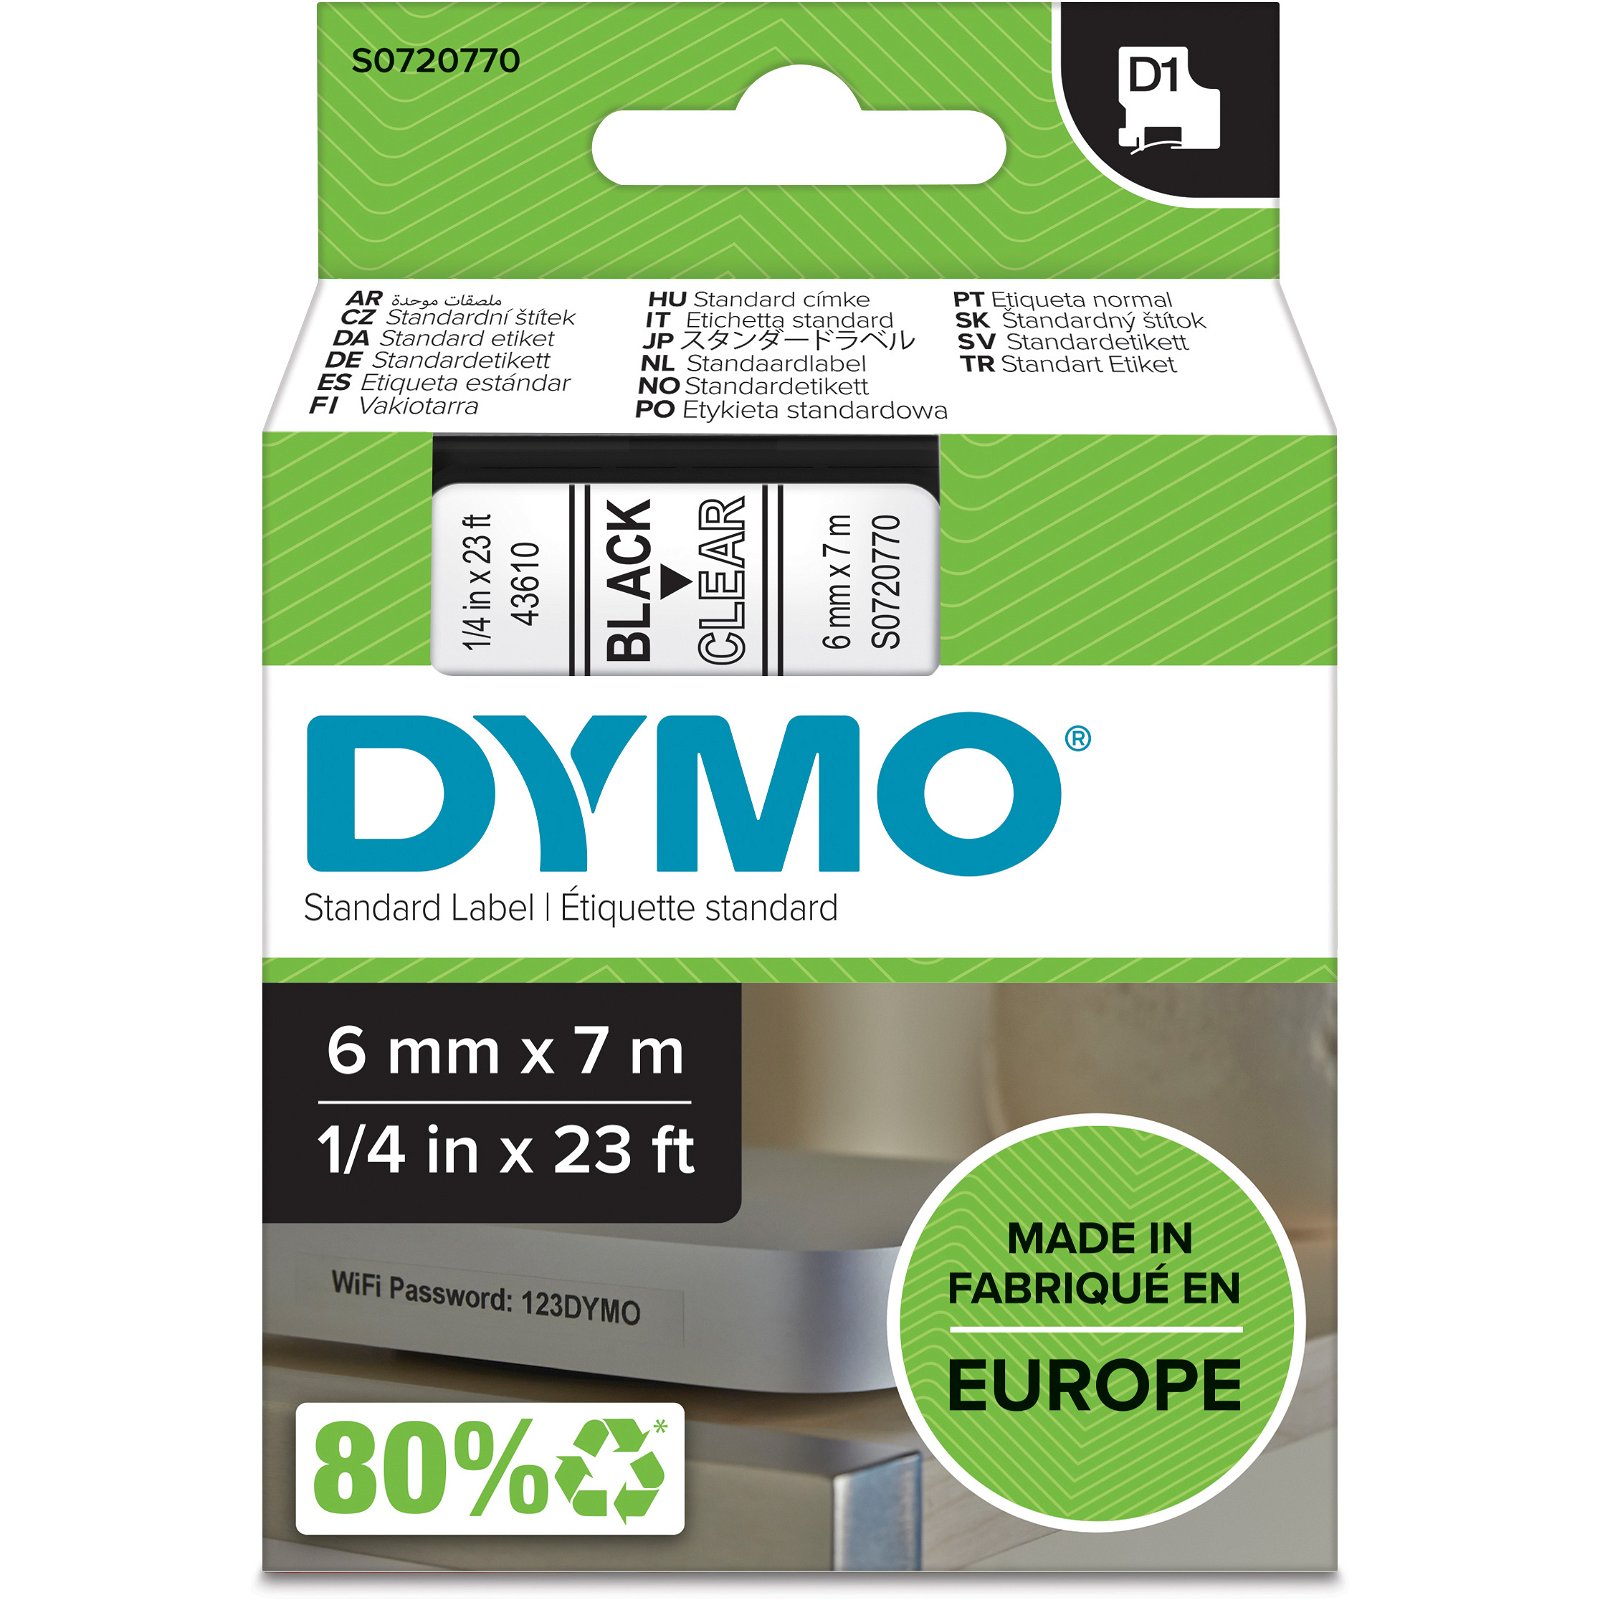 Dymo D1 standard tapekasette 6 mm sort;klar Polyester